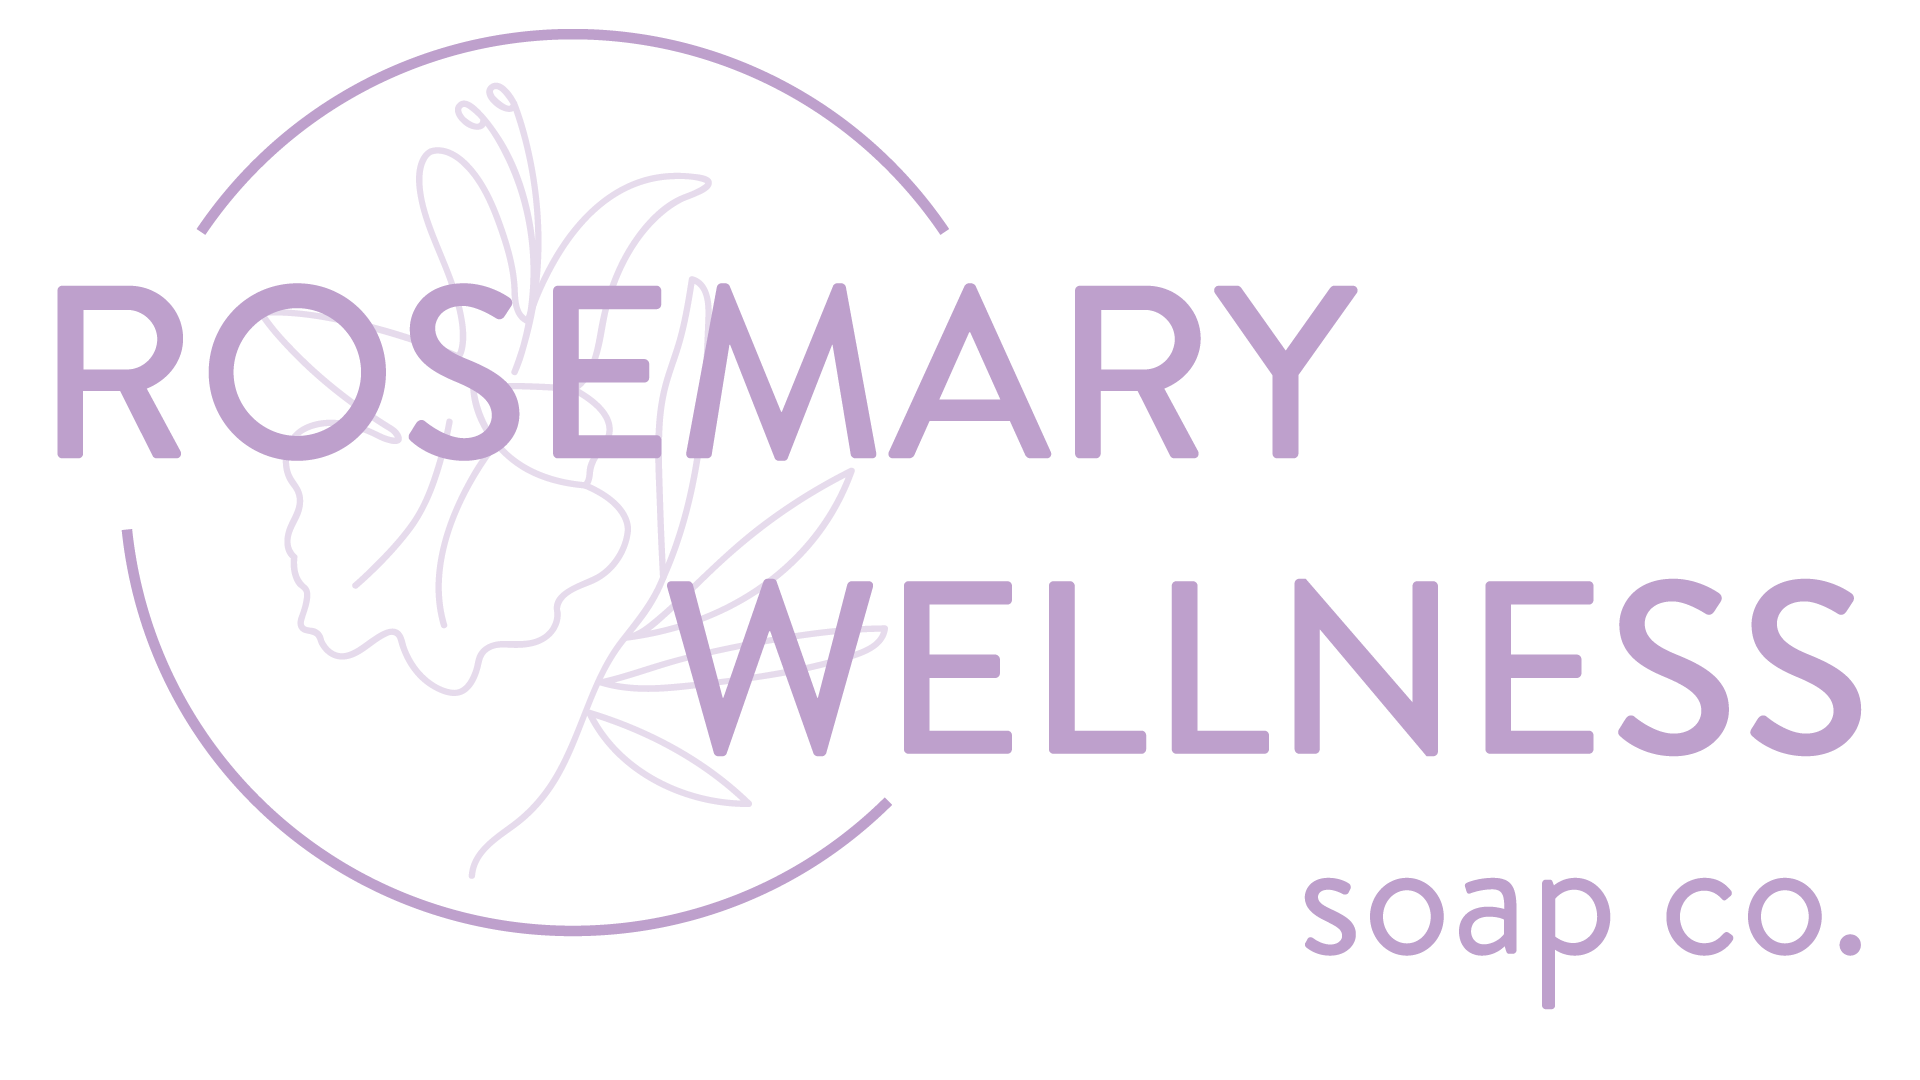 Rosemary Wellness Soap Company